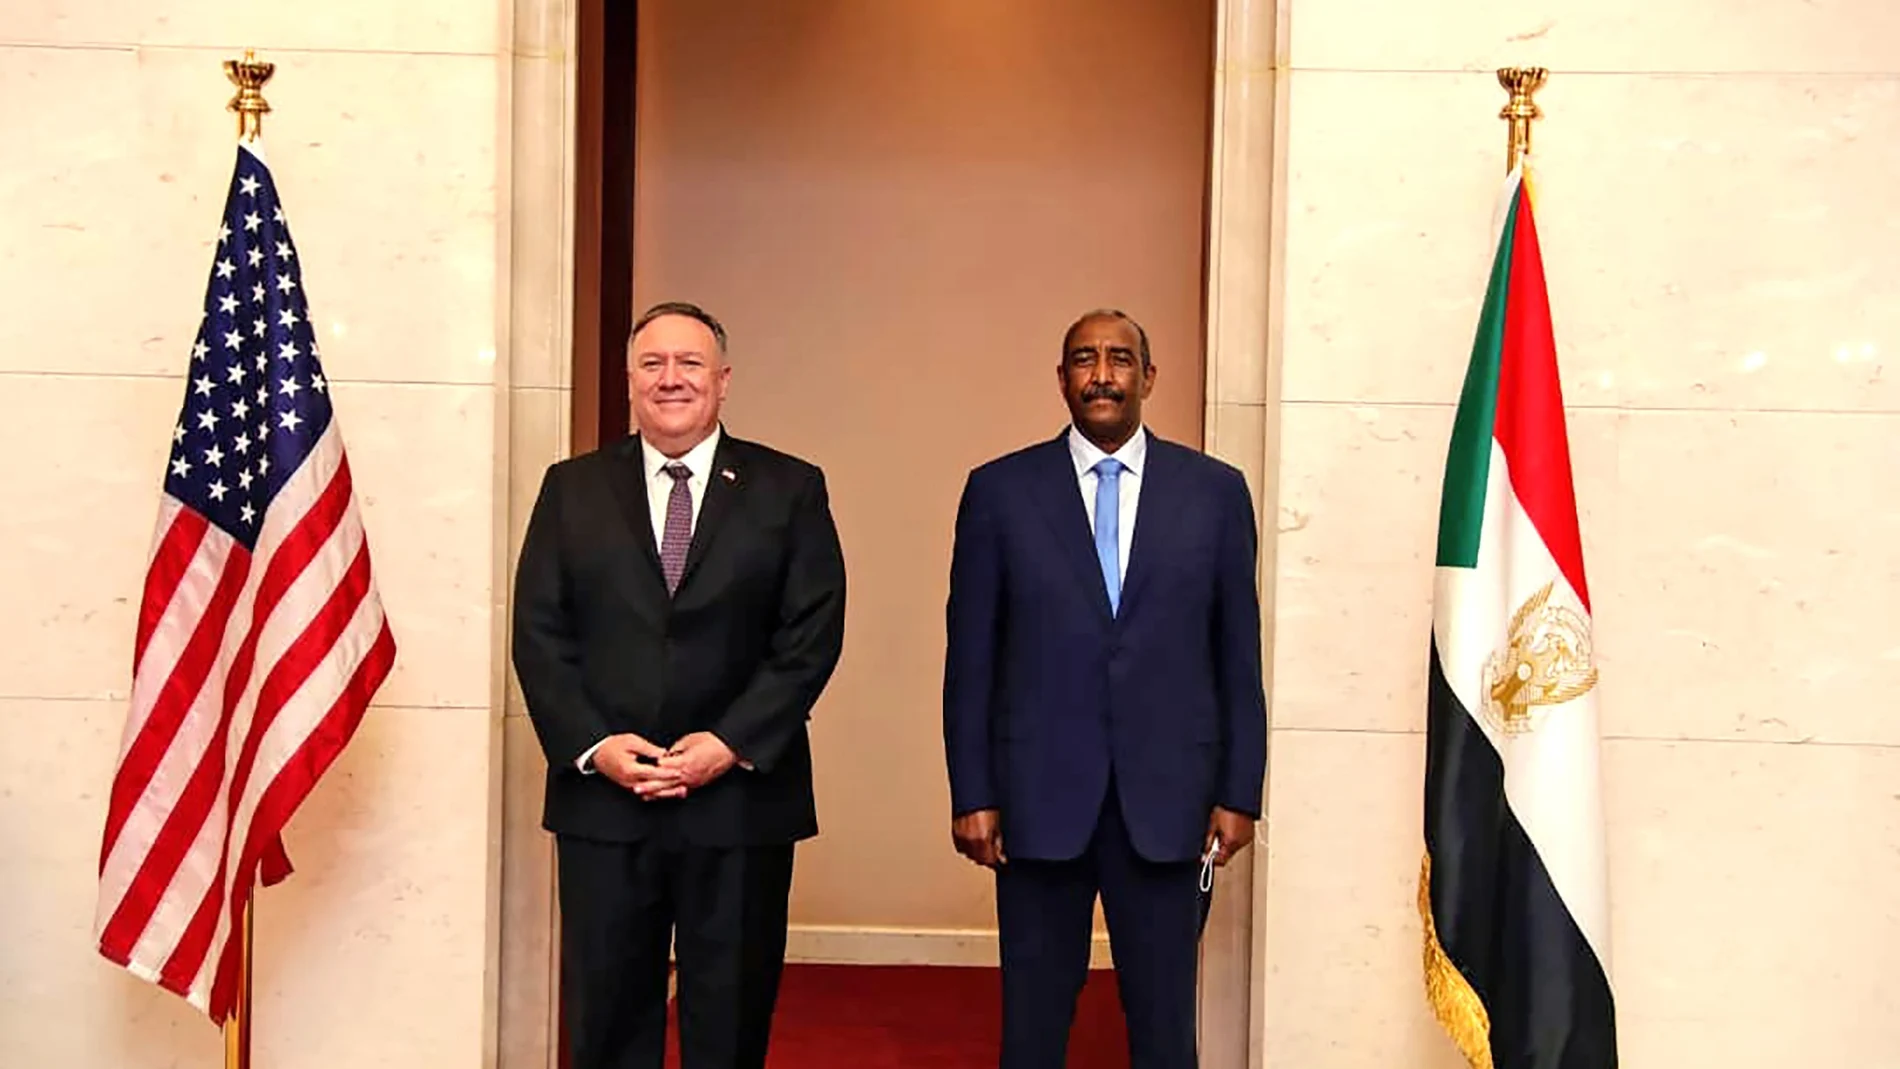 Fotografía de archivo del 25 de agosto de 2020, el secretario de Estado de Estados Unidos, Mike Pompeo, junto al general sudanés Abdel-Fattah Burhan, el jefe del consejo soberano gobernante, en Jartum, Sudán